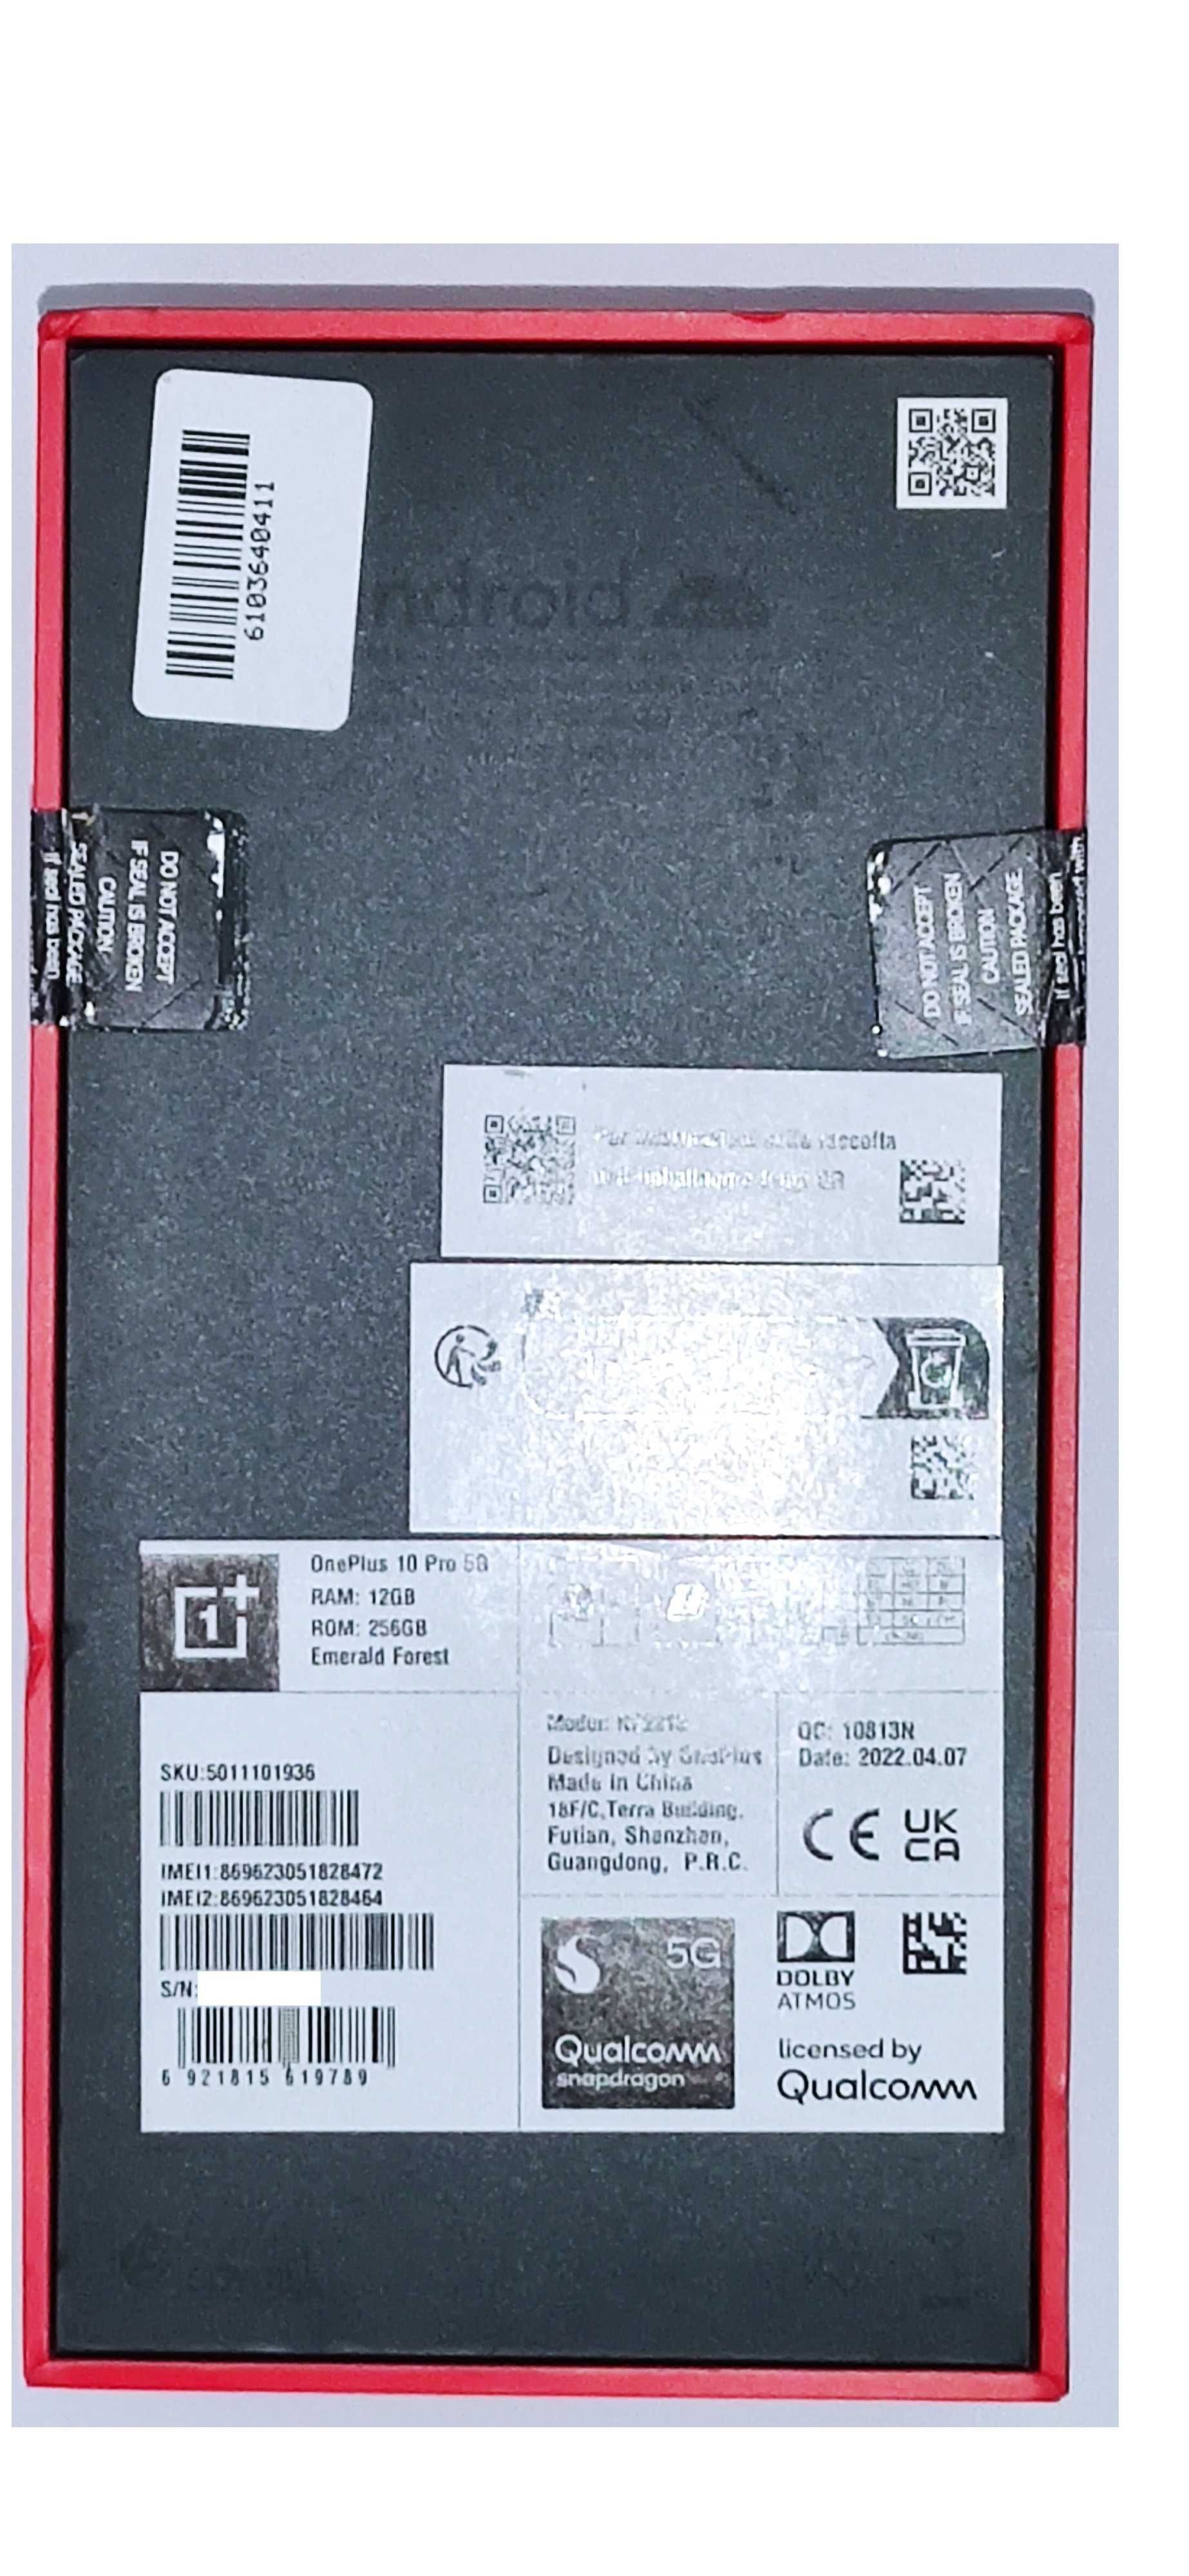 OnePlus 10 Pro 5G 12 GB Emerald Forest  Hz - DOSKONAŁA JAKOŚĆ!